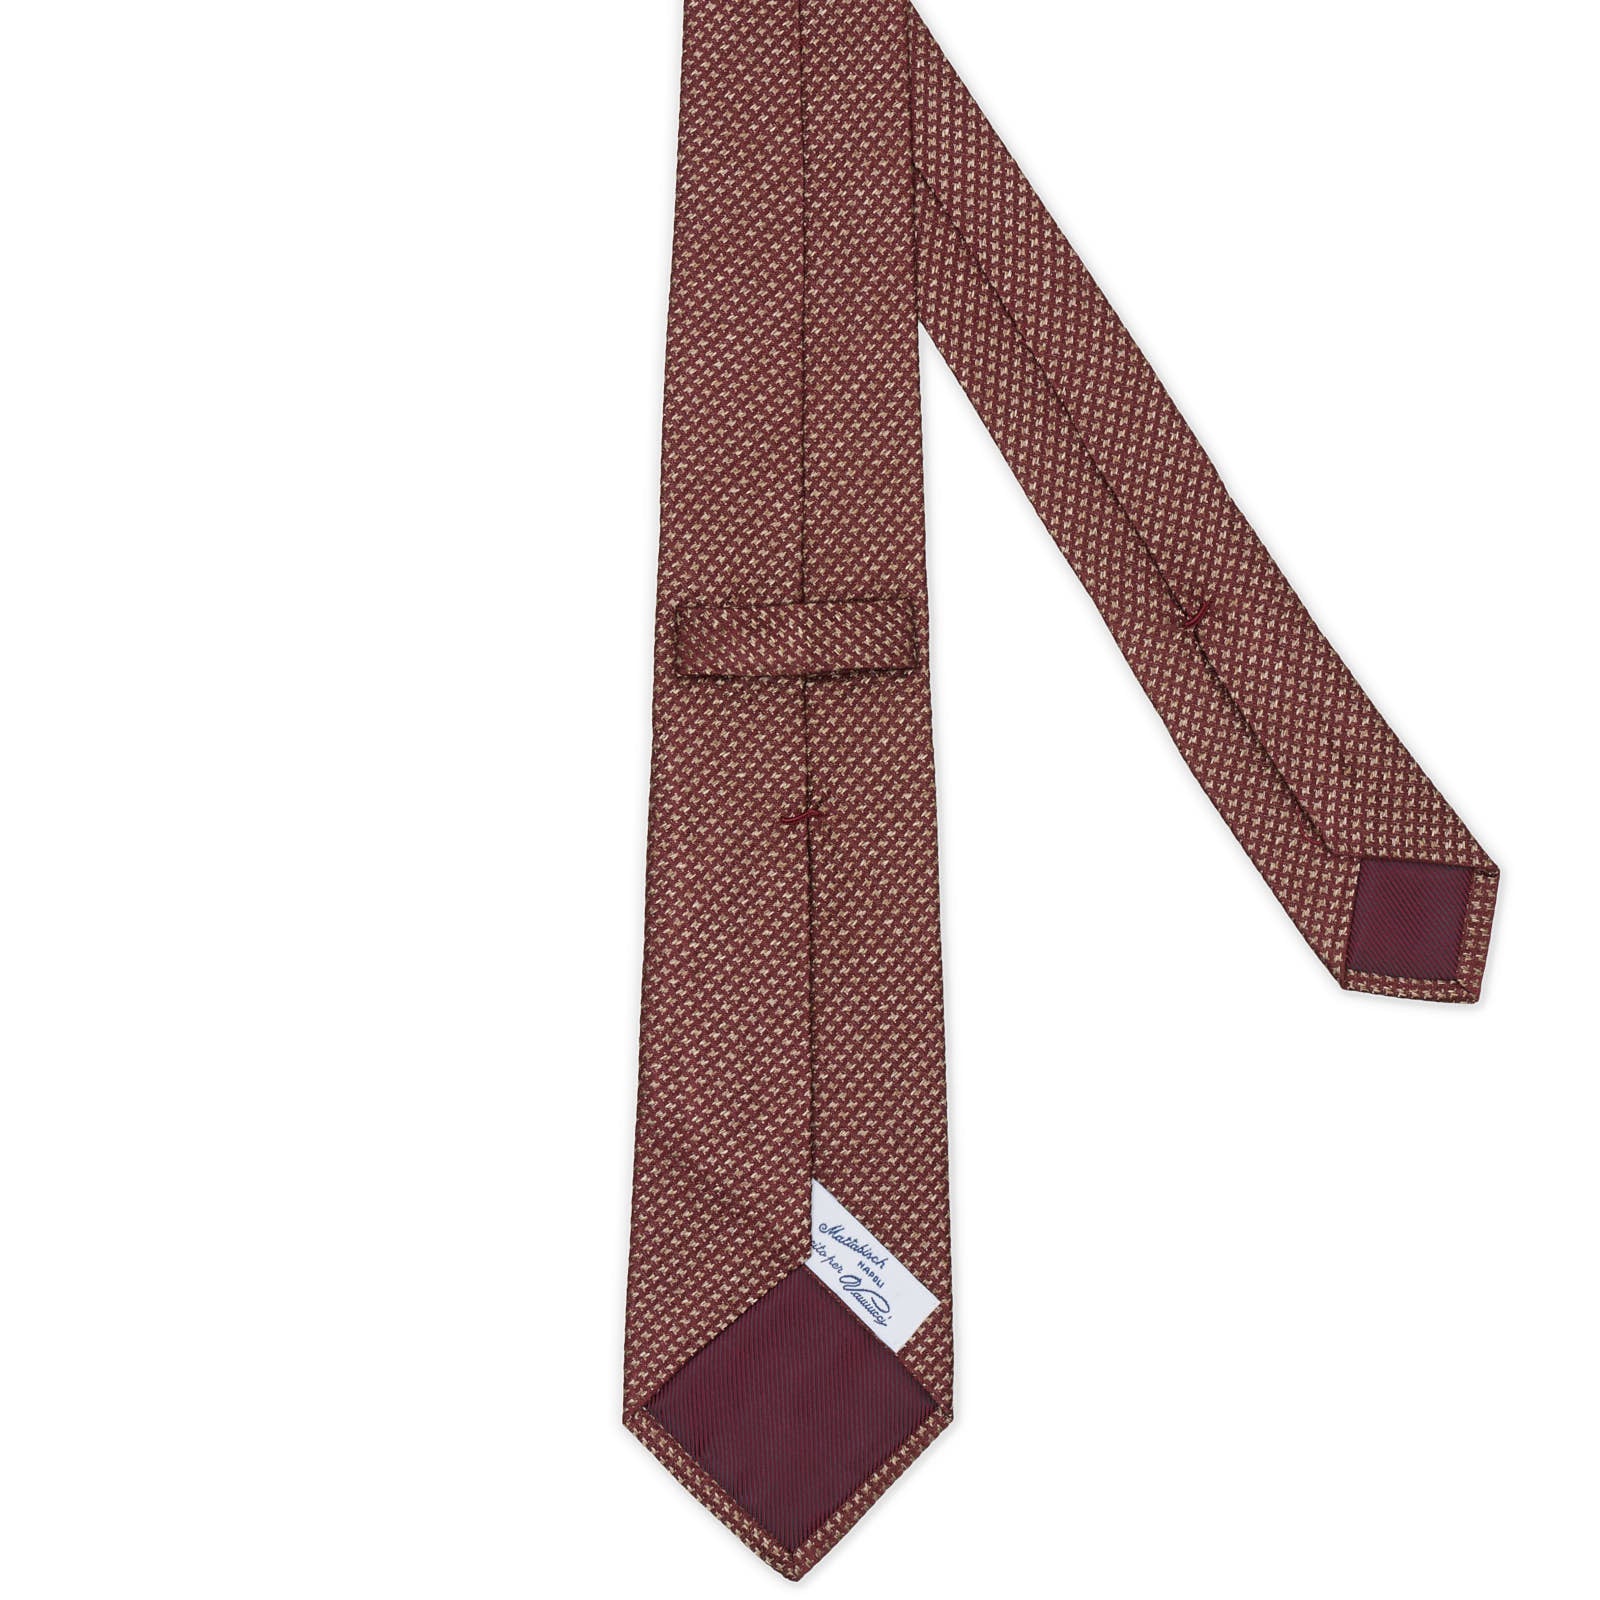 MATTABISCH for VANNUCCI Brown Micro Silk Tie NEW